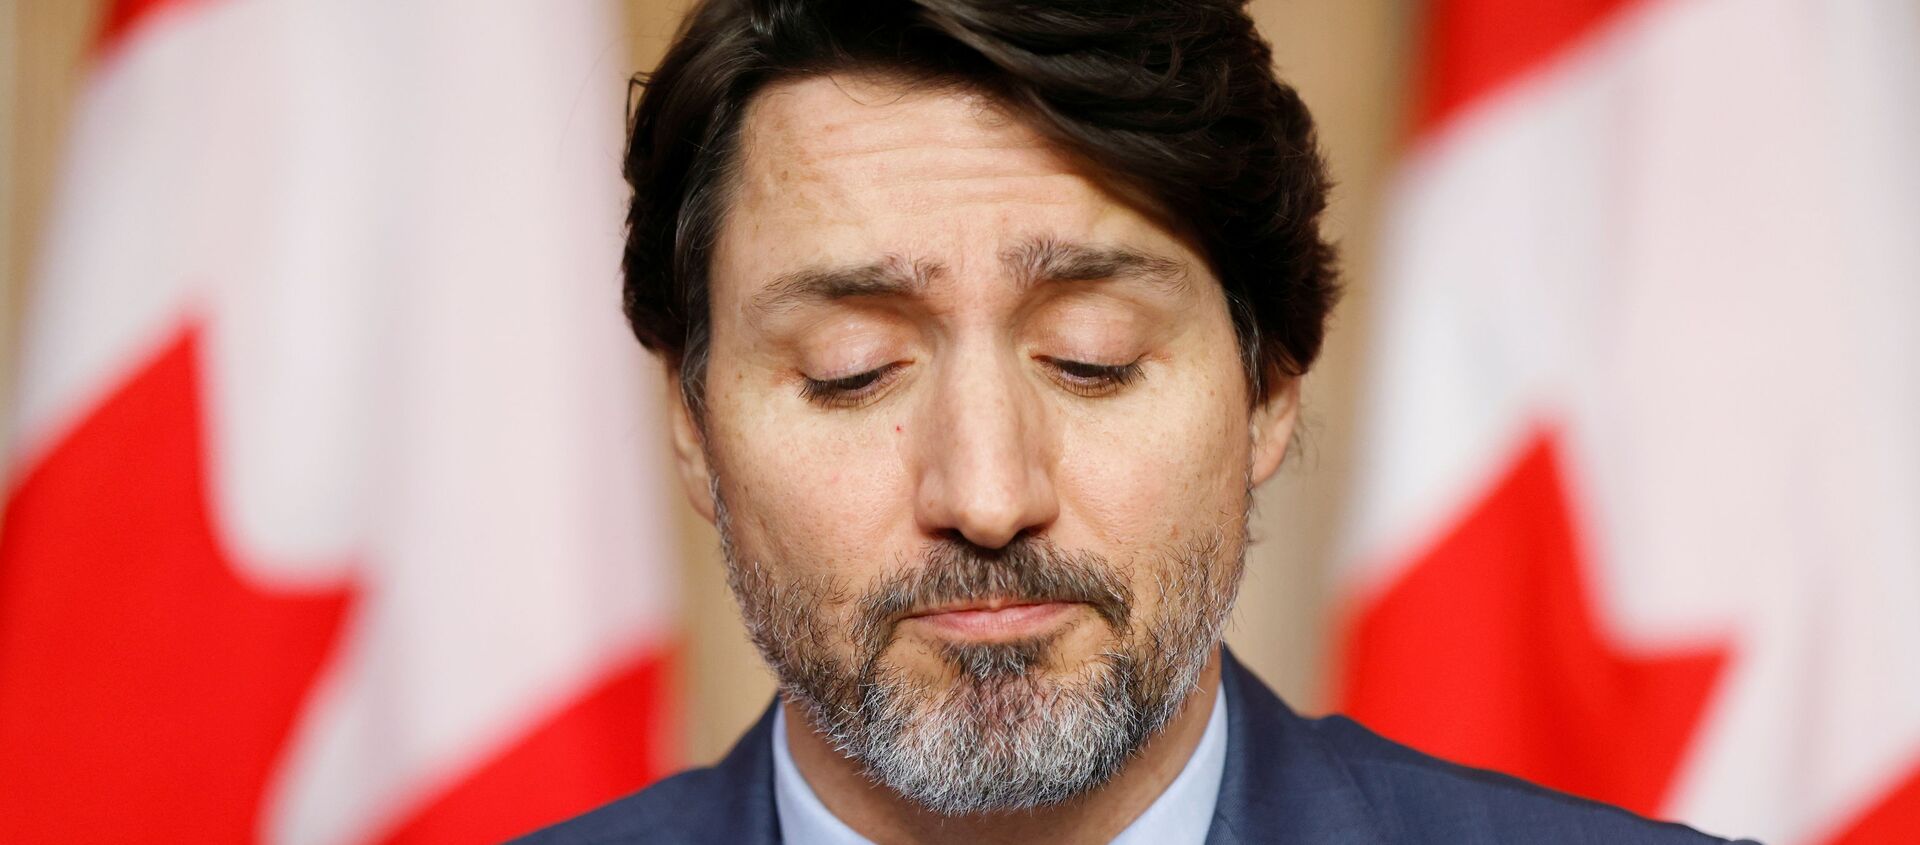 Thủ tướng Canada Justin Trudeau tham dự một cuộc họp báo, khi những nỗ lực tiếp tục giúp làm chậm sự lây lan của bệnh coronavirus (COVID-19), tại Ottawa, Ontario, Canada ngày 19 tháng 3 năm 2021 - Sputnik Việt Nam, 1920, 31.03.2021